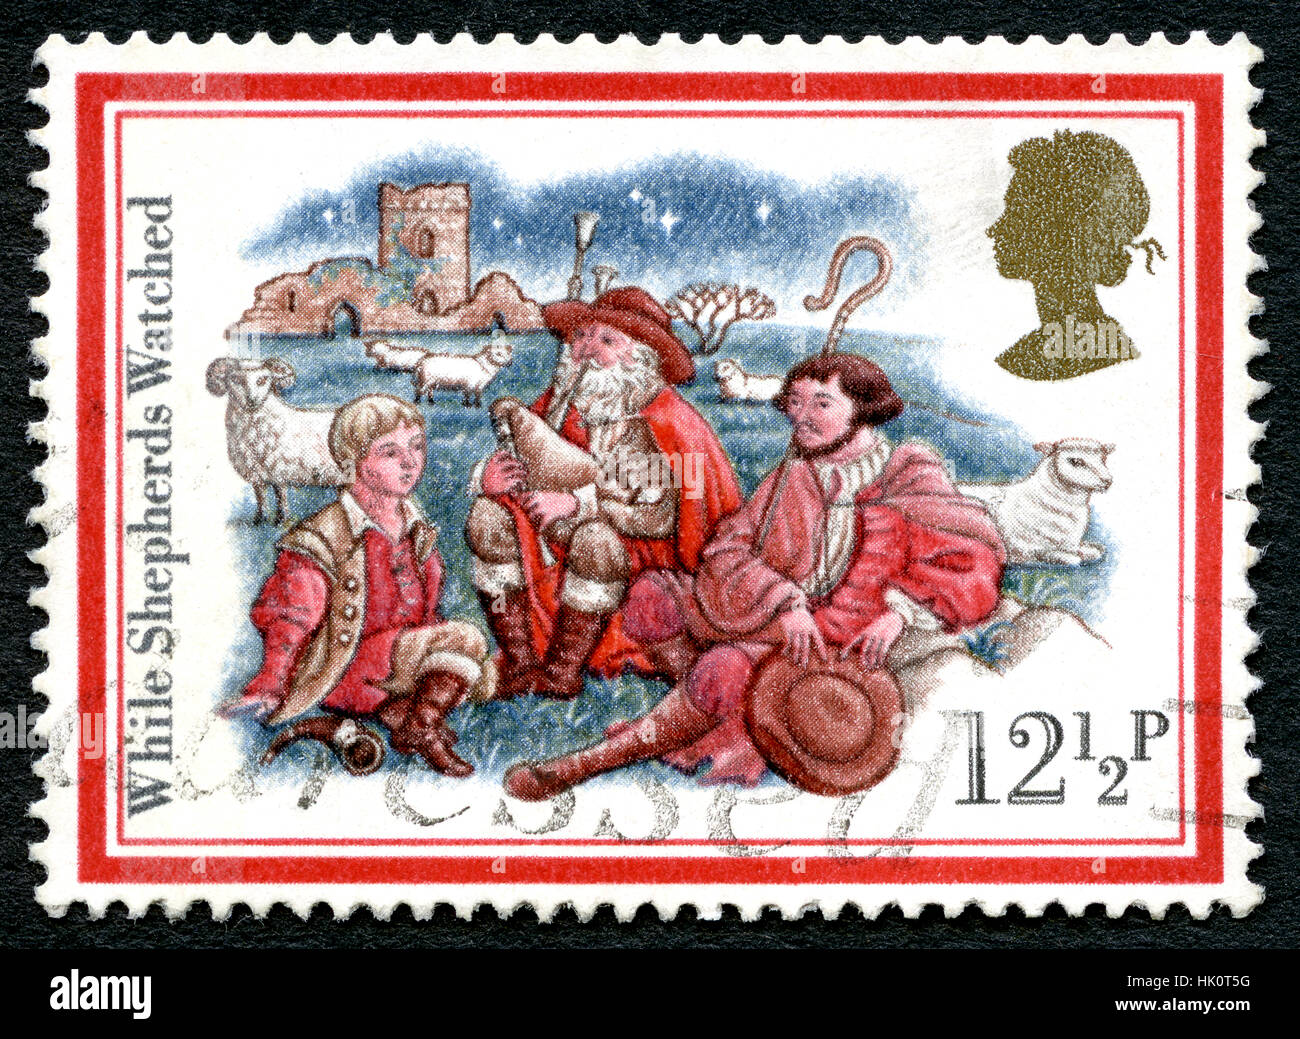 UK - CIRCA 1982: Eine gebrauchte Briefmarke aus dem Vereinigten Königreich, zum Gedenken an Weihnachtslieder mit dem Titel während des Hirten beobachten. Stockfoto